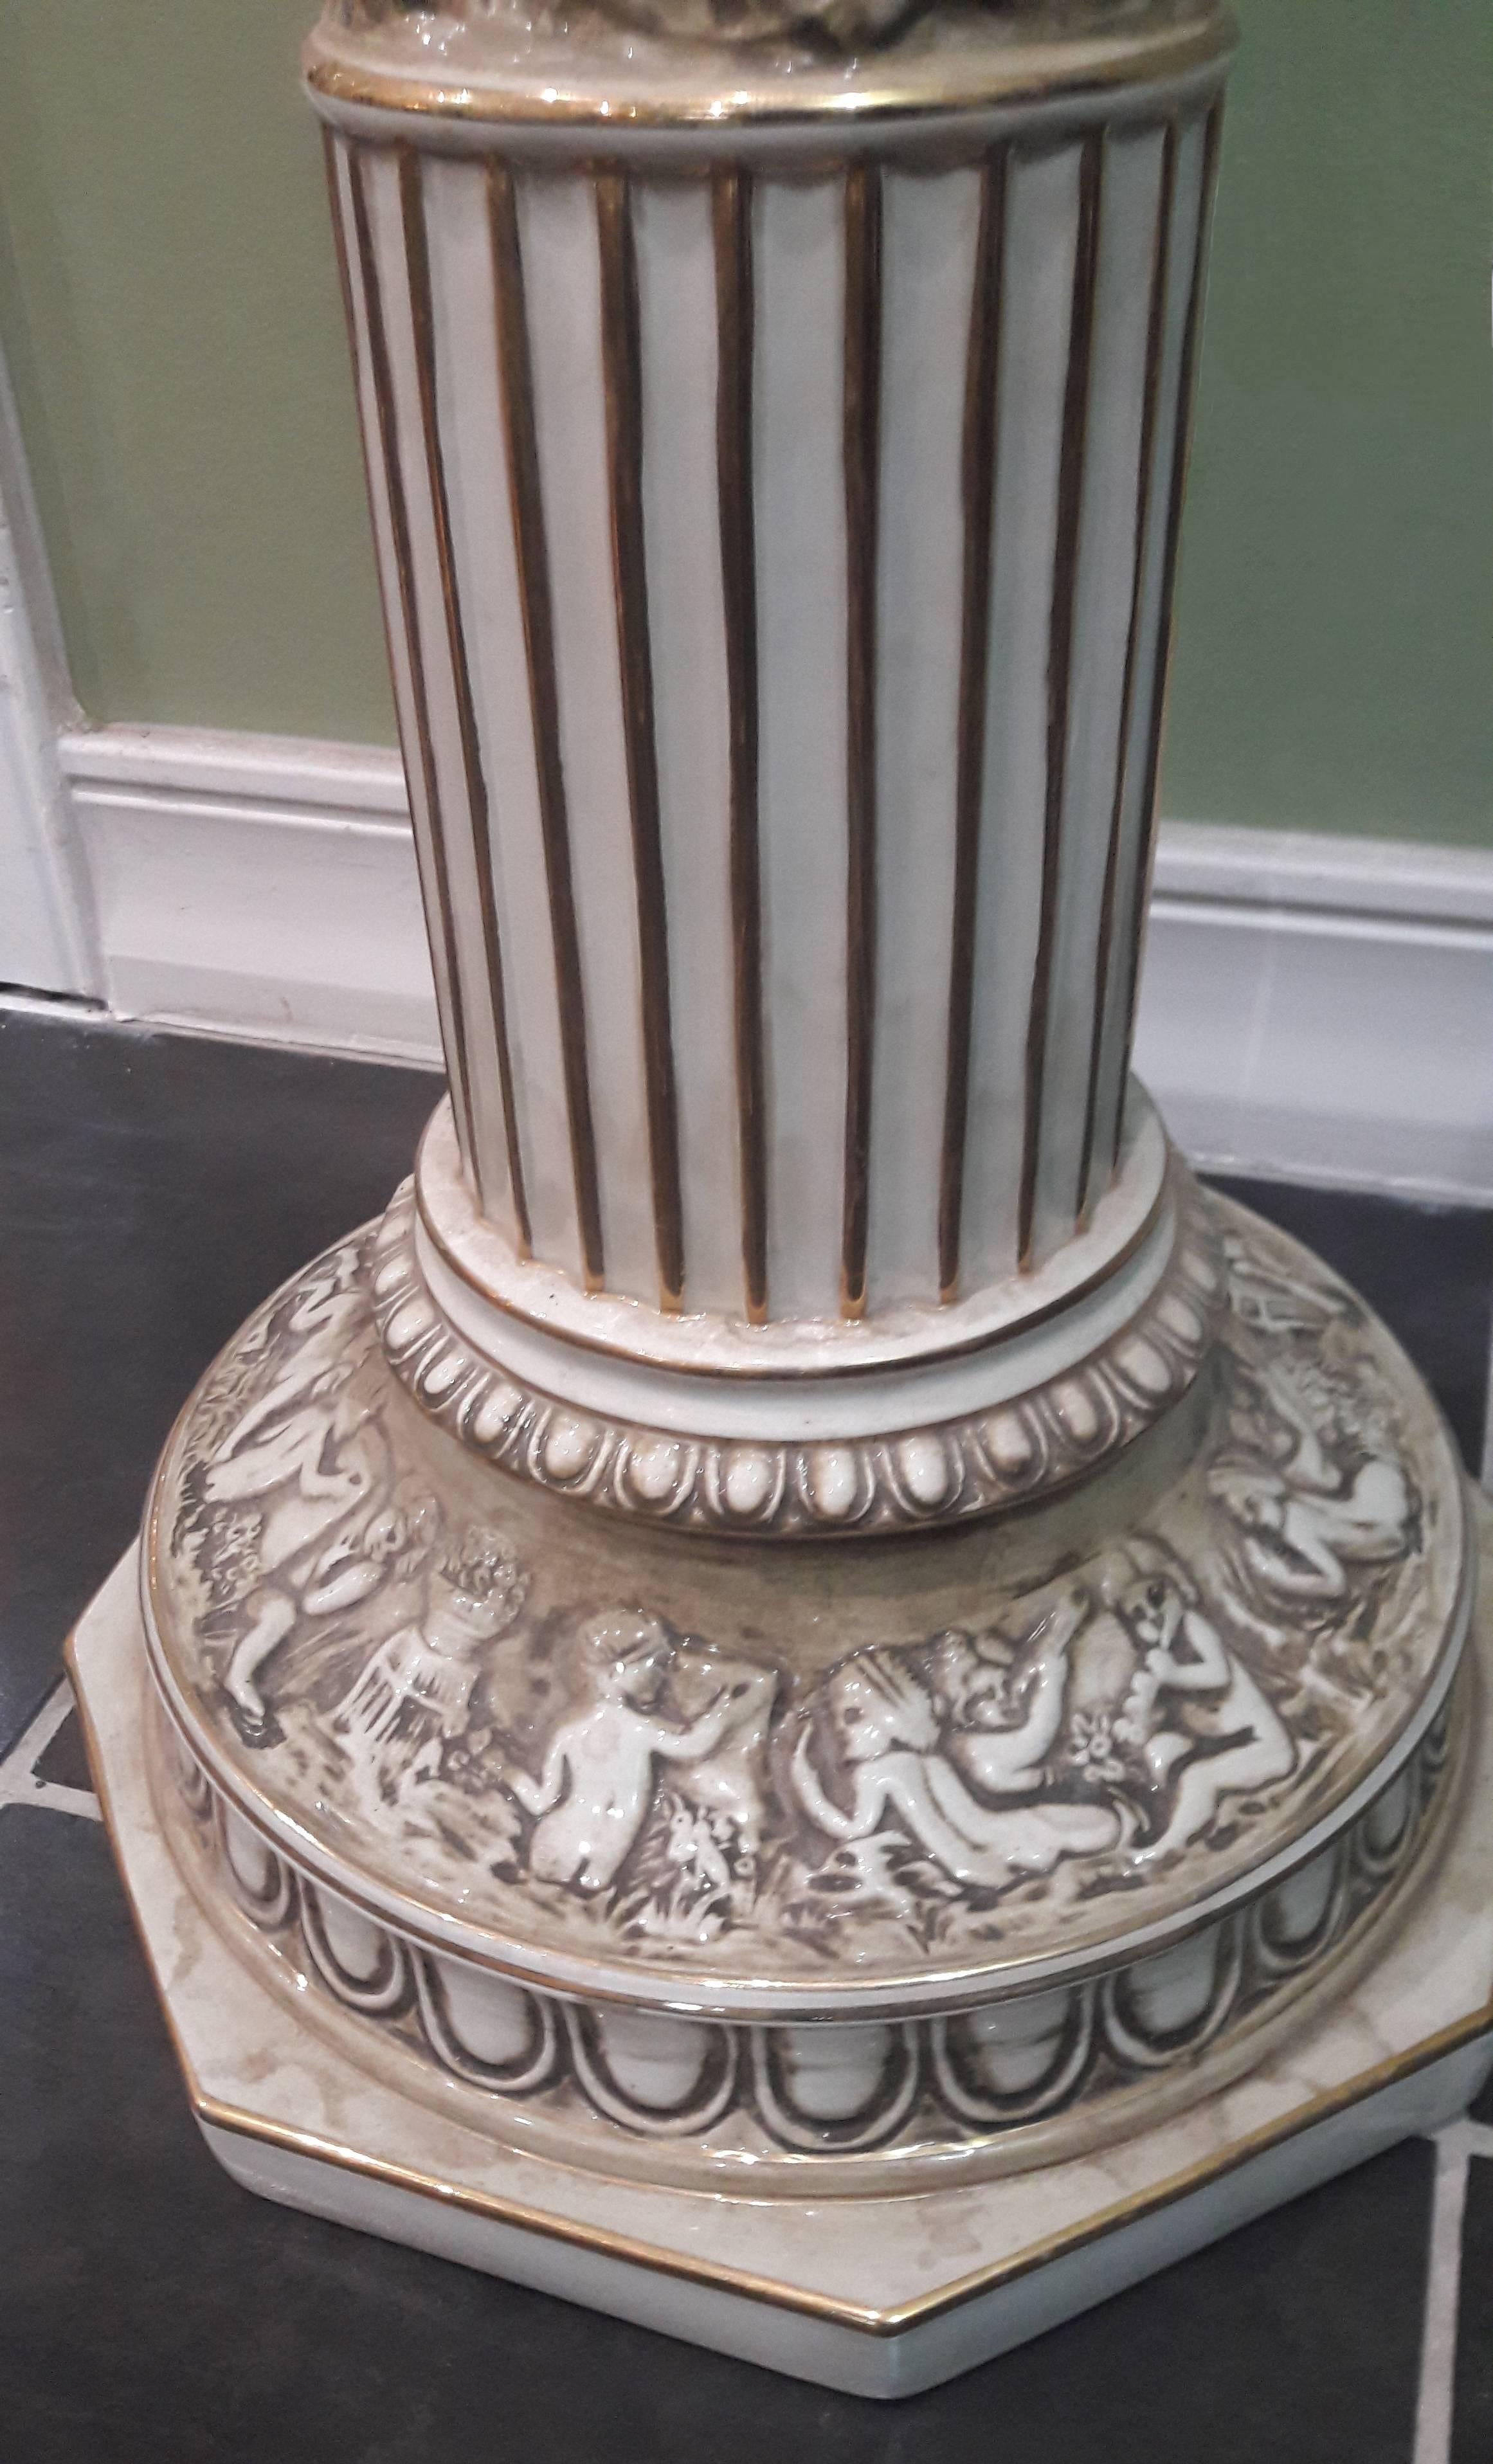 capodimonte pedestal for sale